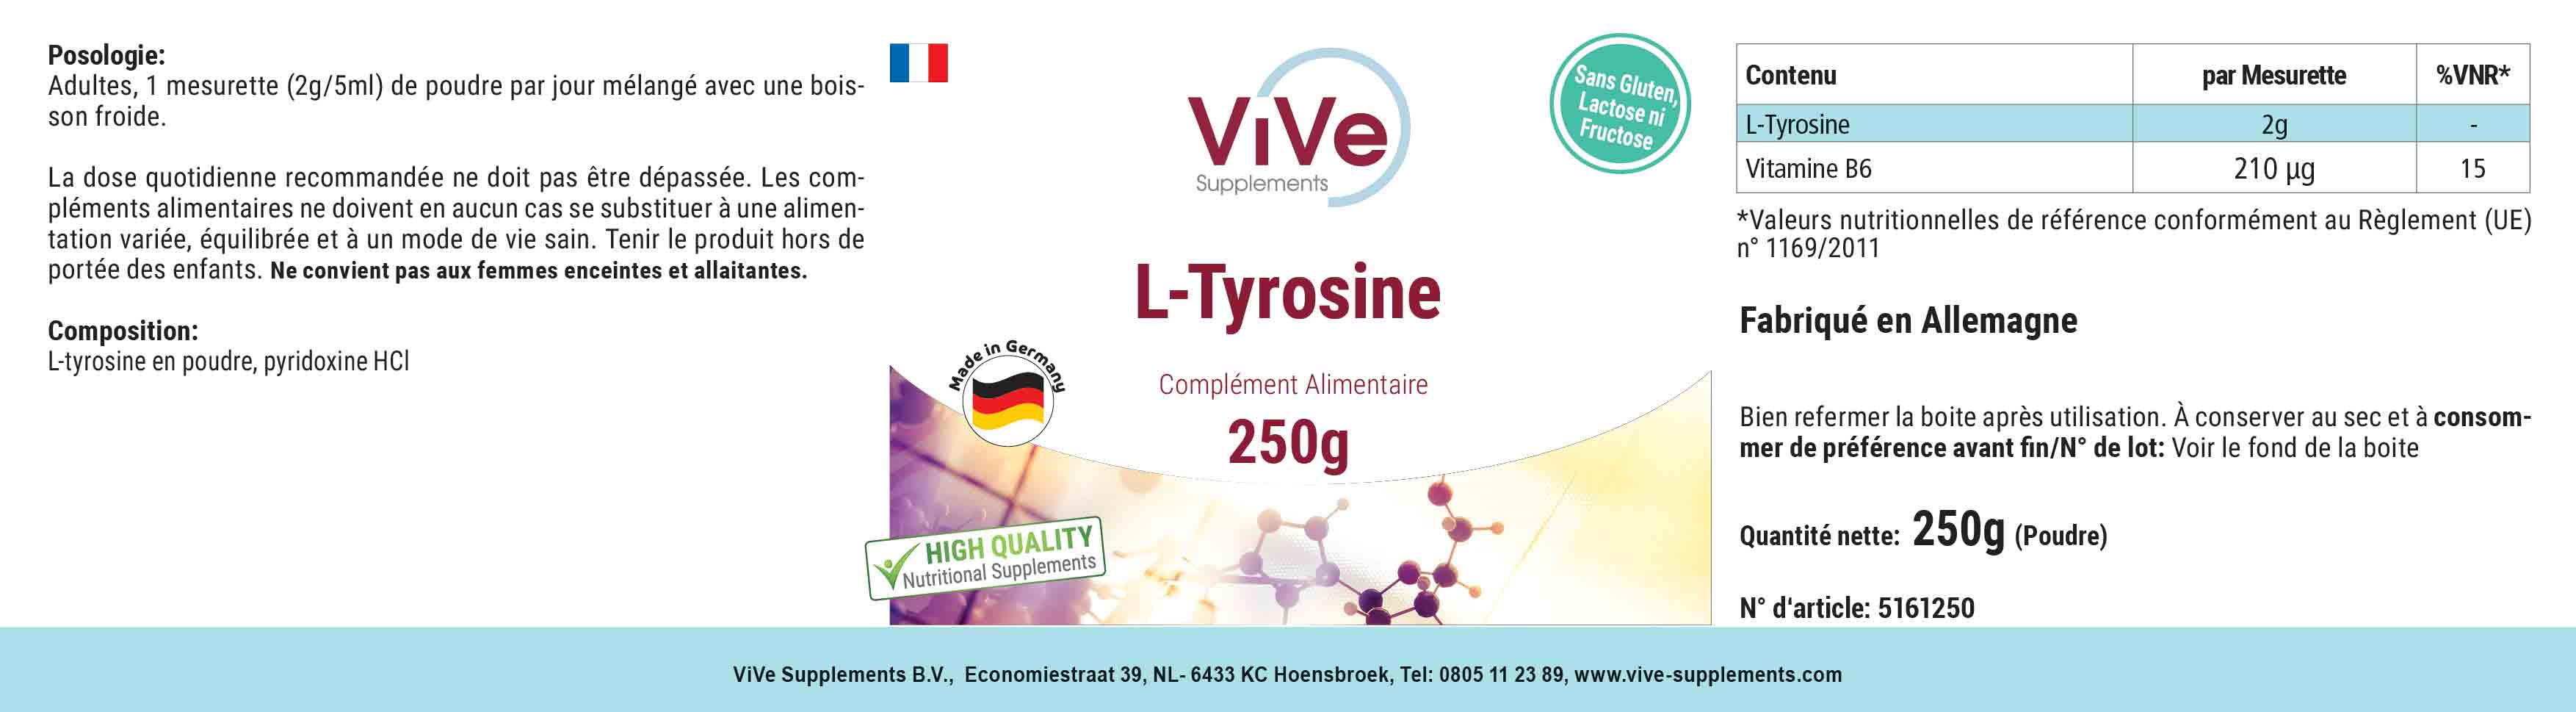 L-Tyrosin powder 250g + Vitamin B6